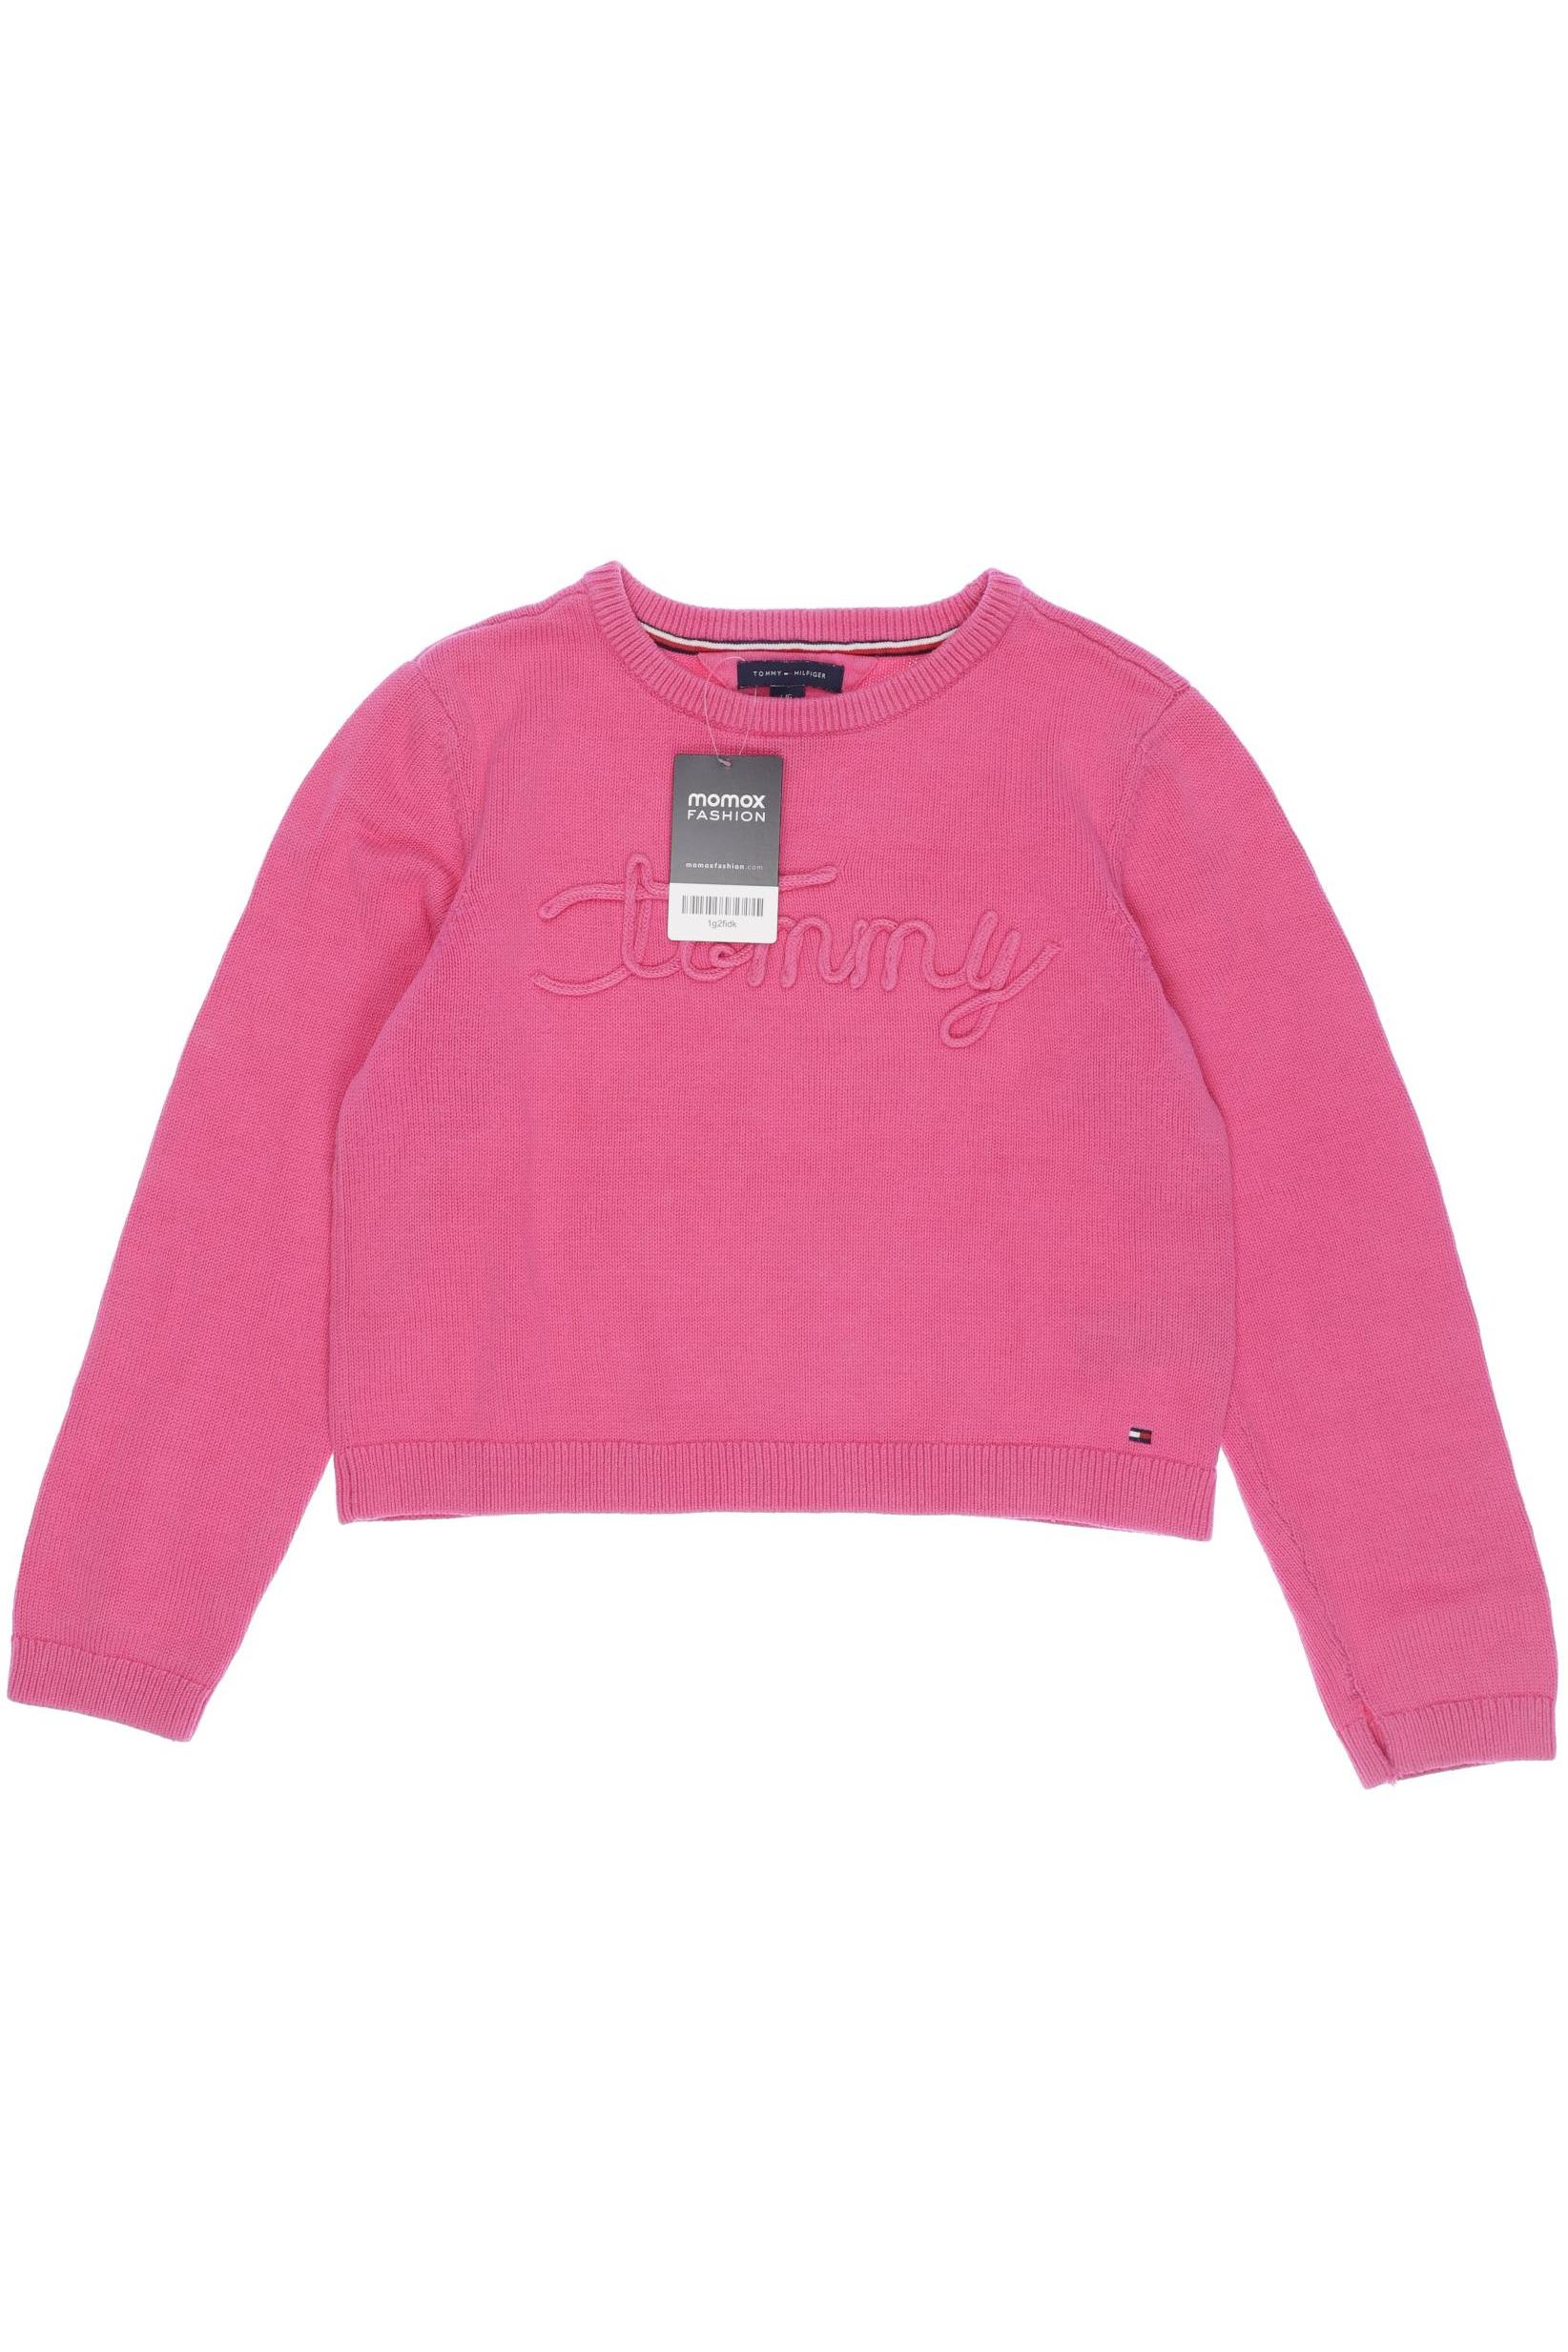 Tommy Hilfiger Damen Pullover, pink, Gr. 158 von Tommy Hilfiger